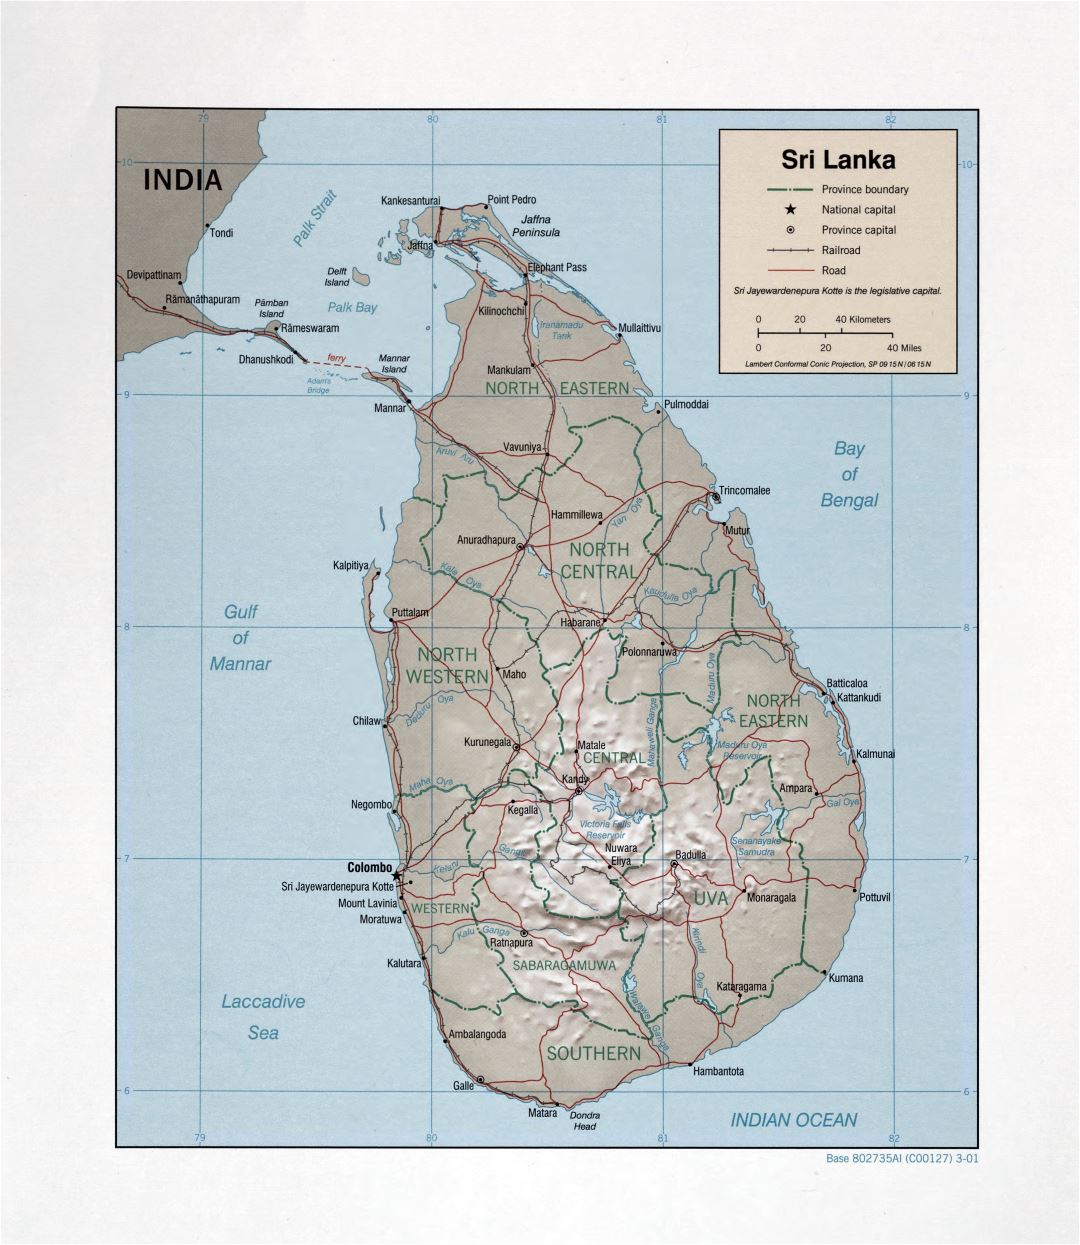 Grande detallado mapa político y administrativo de Sri Lanka con socorro, carreteras, ferrocarriles y principales ciudades - 2001